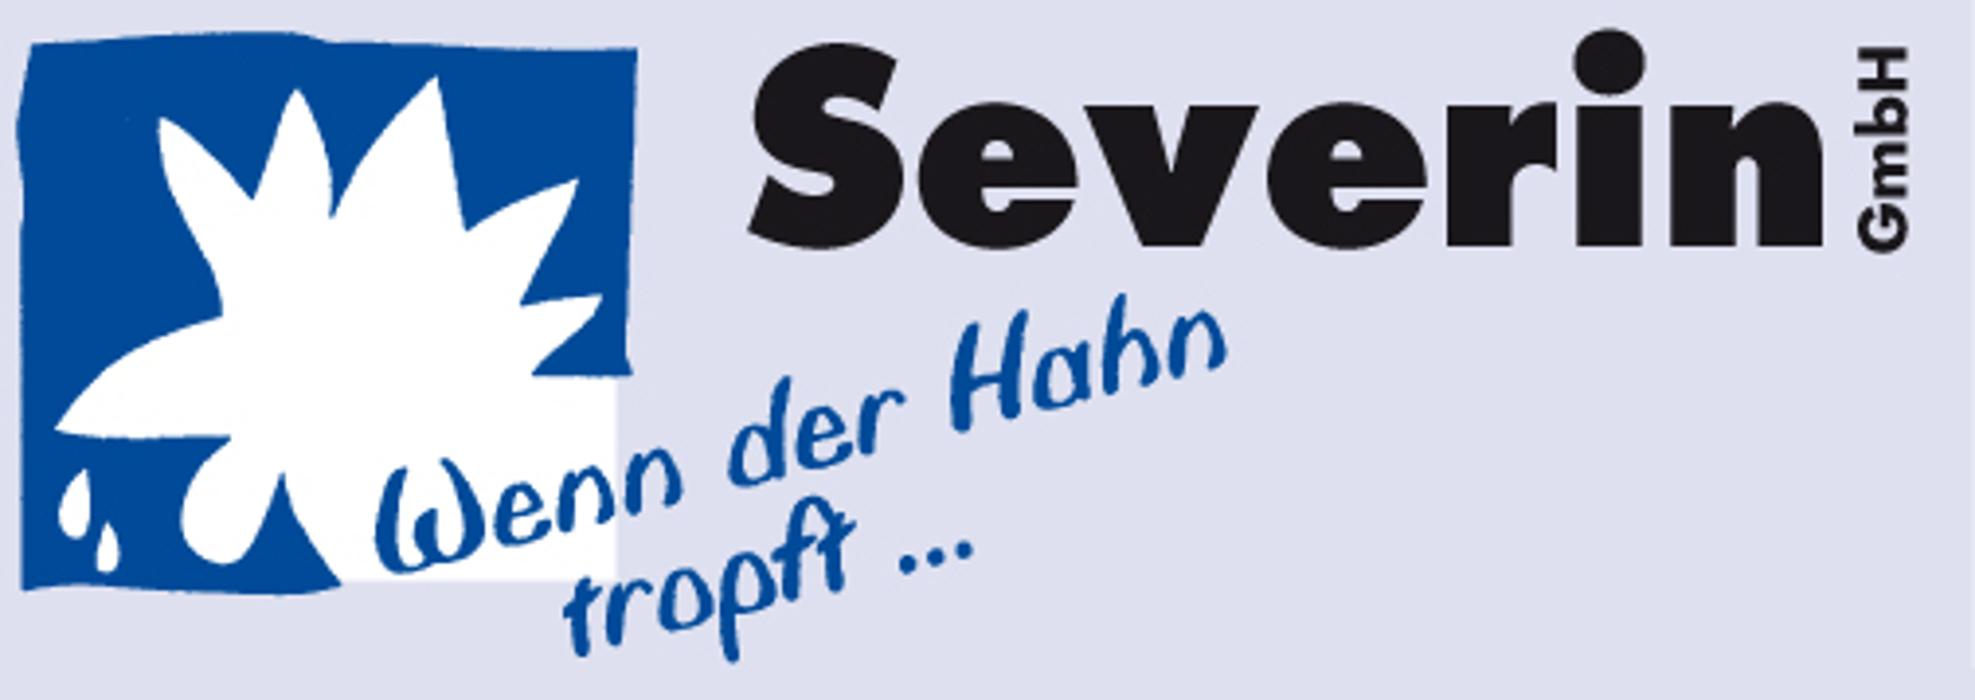 Severin GmbH Gas- und Wasserinstallation, Sanitär und Heizung - Sanitärtechnische Arbeiten